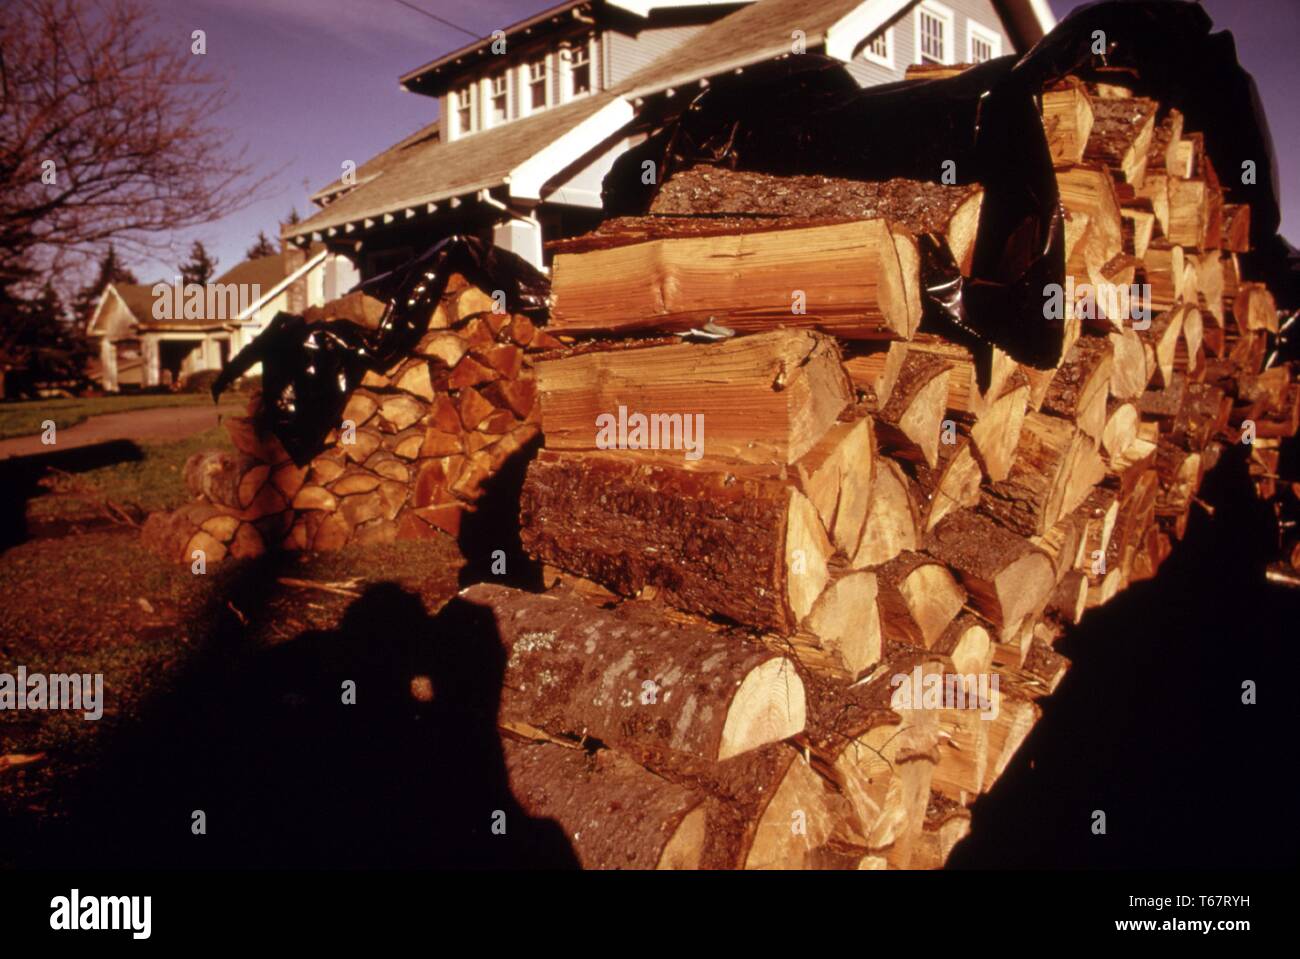 Bis die Krise es sehr ungewöhnlich war Holz auf vorderen Rasen, wie dieser Stapel gestapelt zu bemerken. Preise für vorgeschnittene Holz emporgeschnellt über Nacht, aber es war trotzdem gekauft. Mit freundlicher National Archives, United States, 1973. Stockfoto